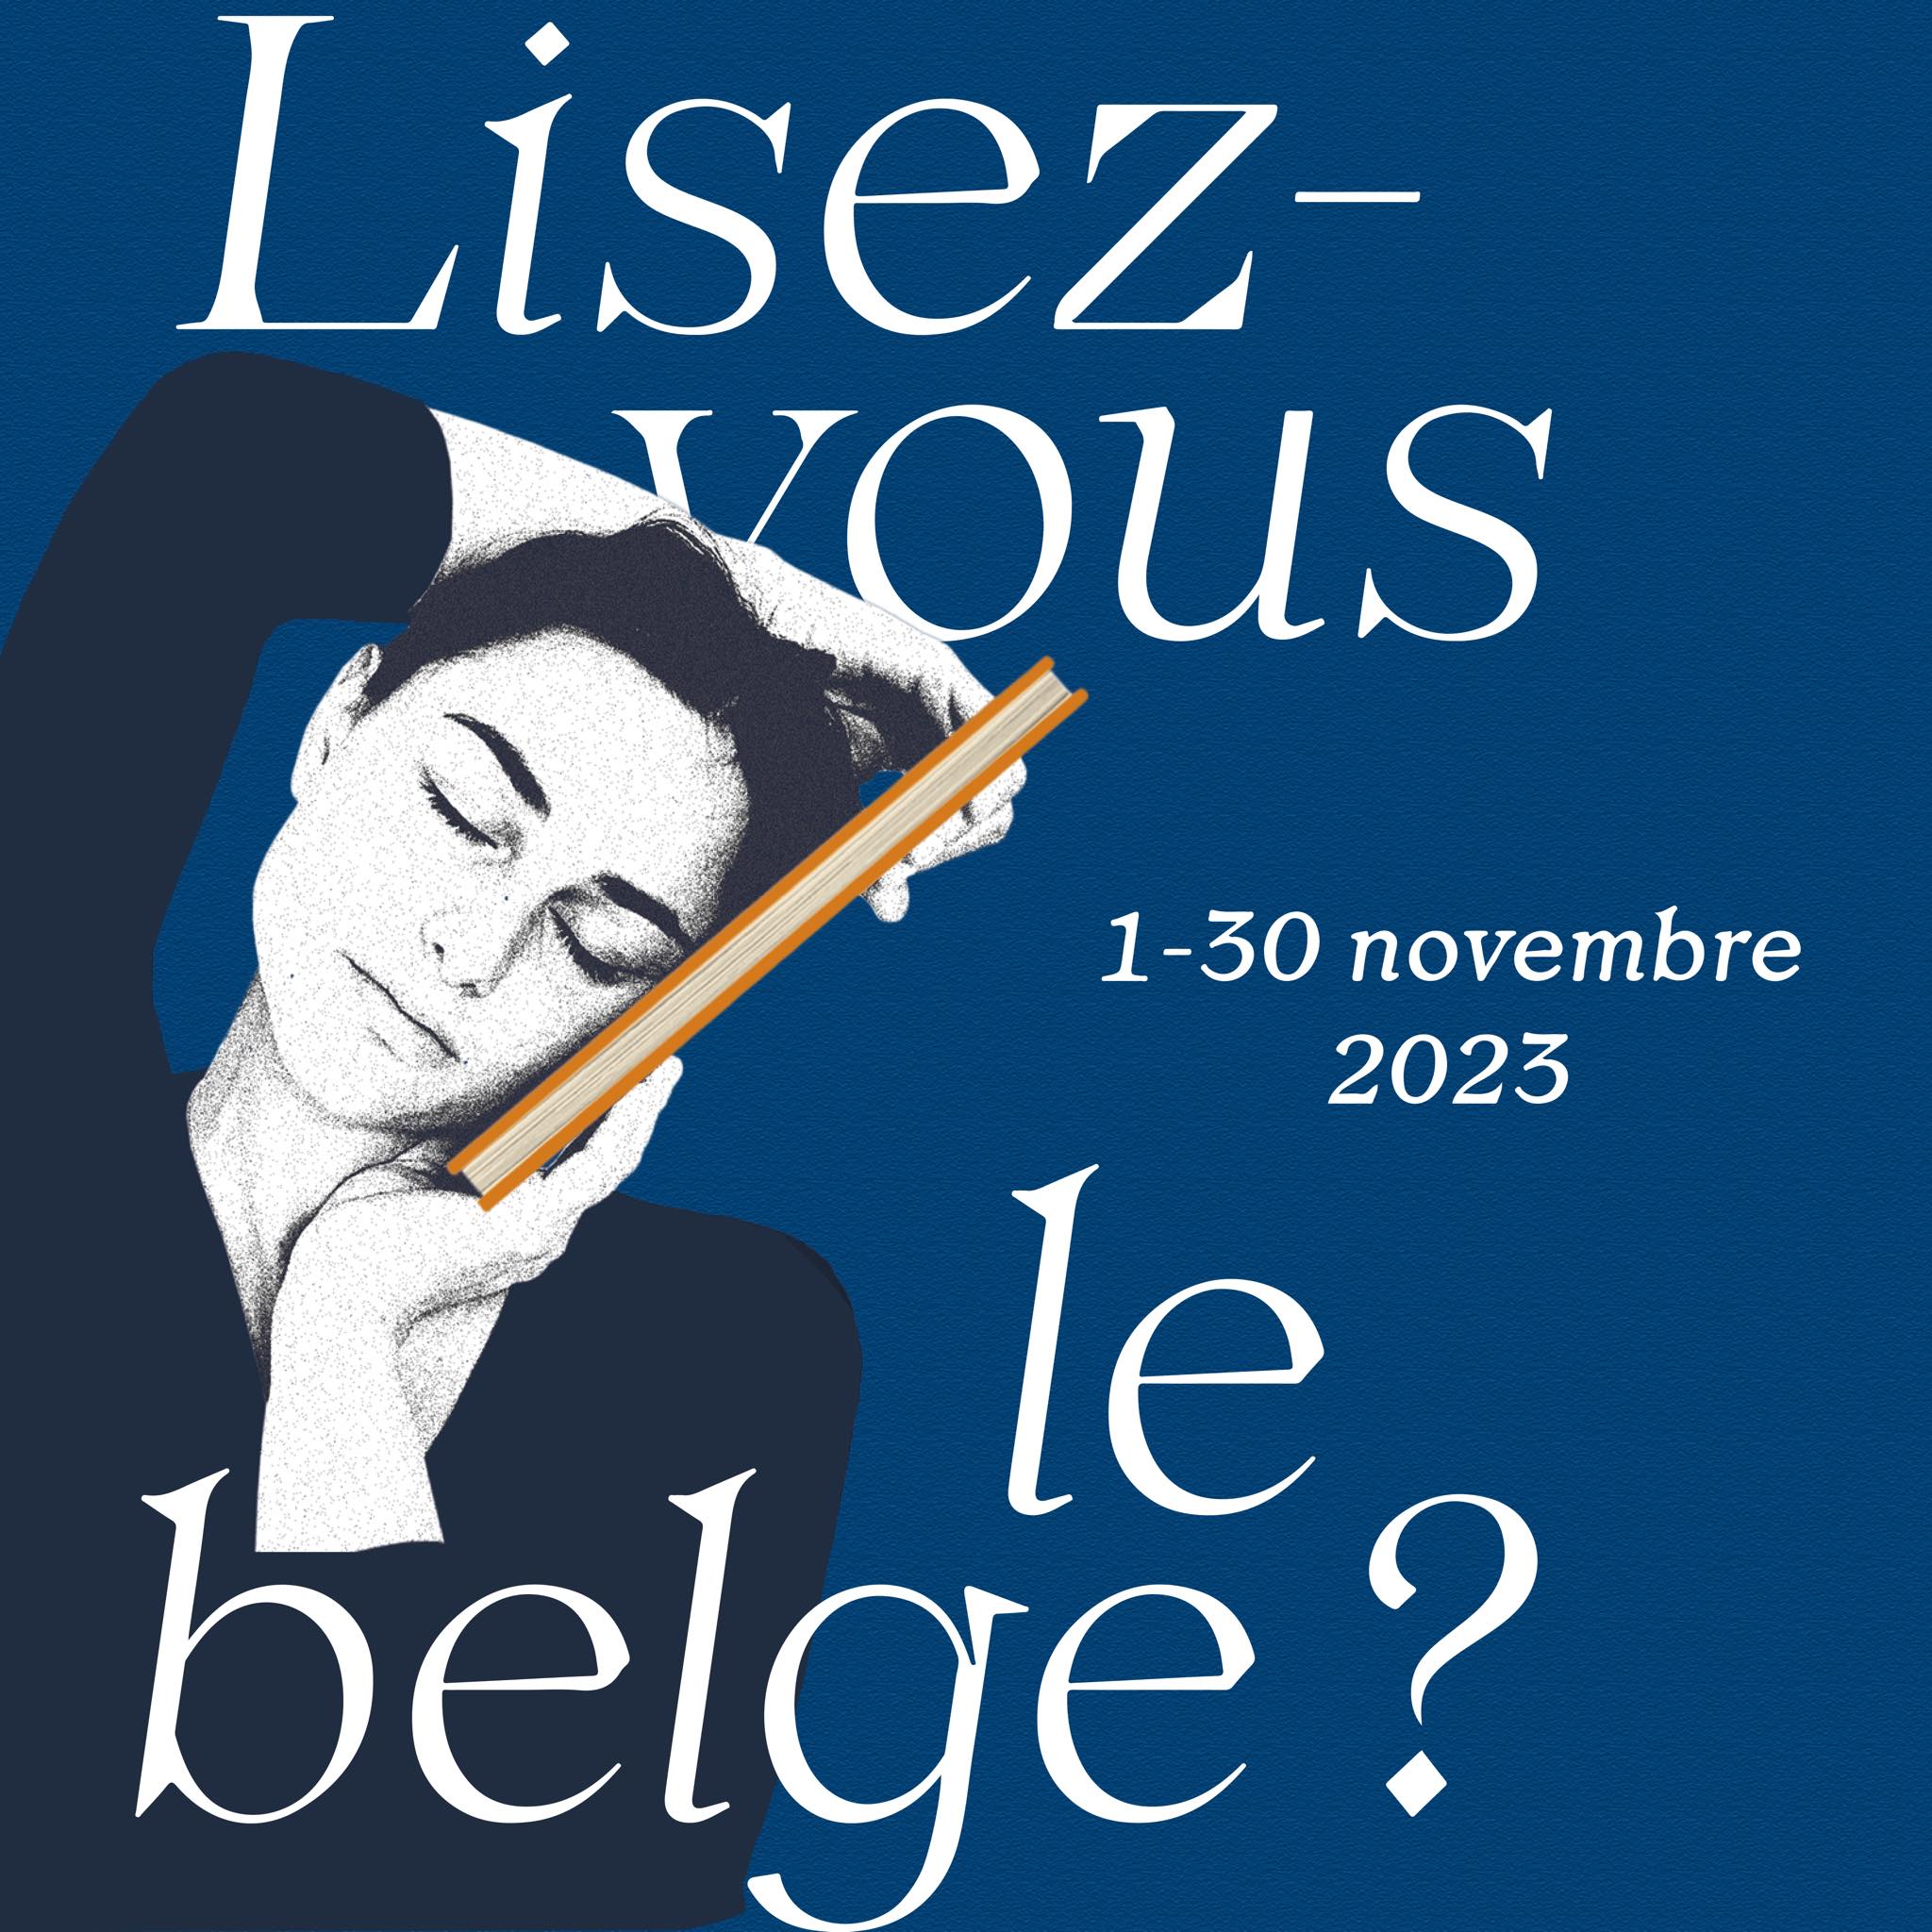 La campagne Lisez-vous le belge ? revient pendant tout le mois de novembre